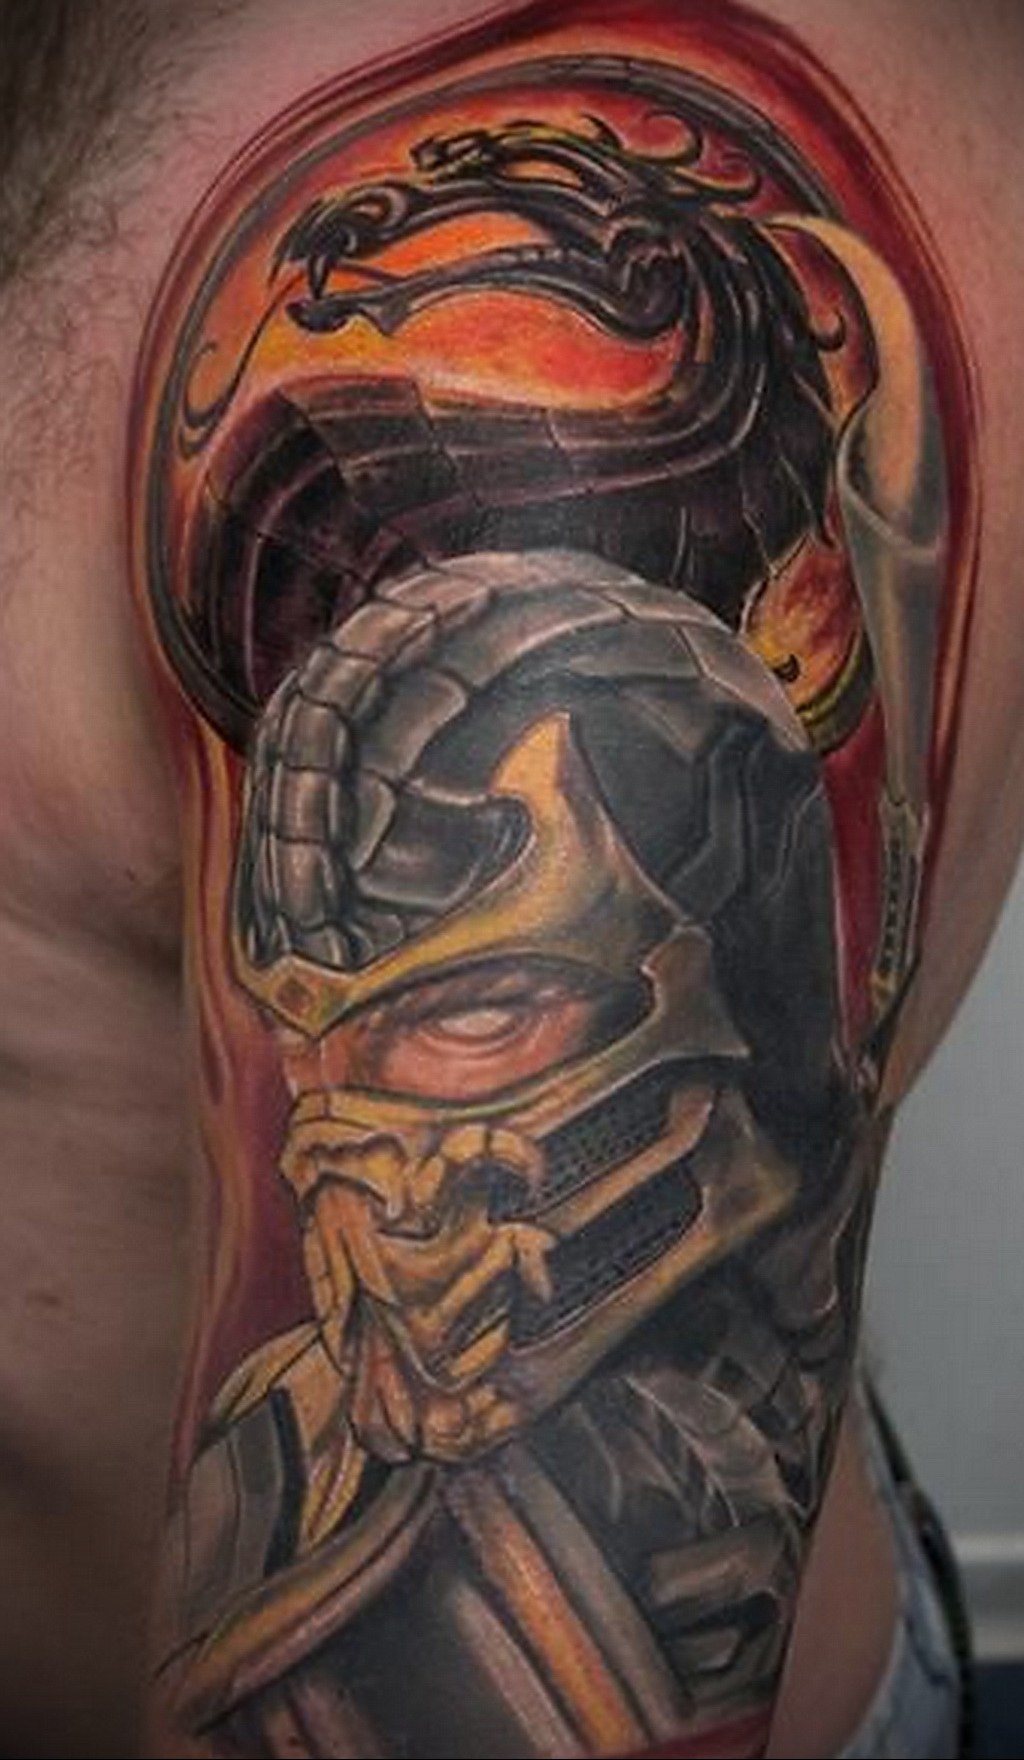 Mortal kombat tattoo